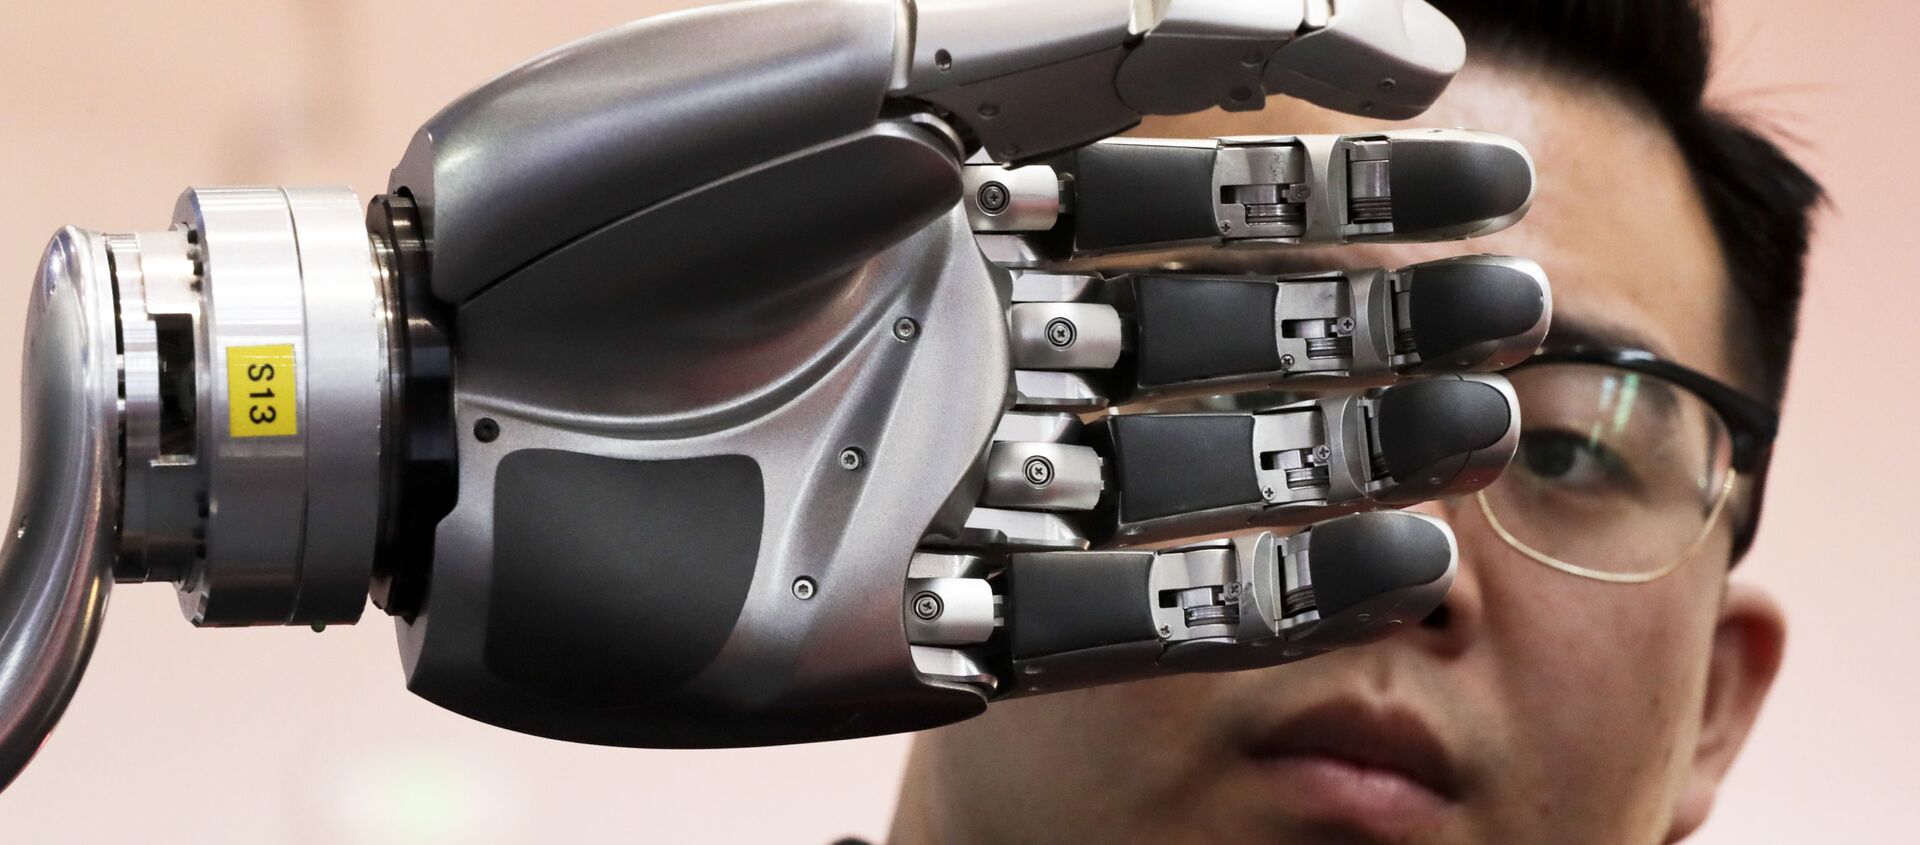 Посетитель разглядывает роботизированную руку, приводимую в движение перчаткой Kinfinity Glove, в Международном выставочном центре в Пекине, Китай, 2017 год - Sputnik Казахстан, 1920, 14.03.2021